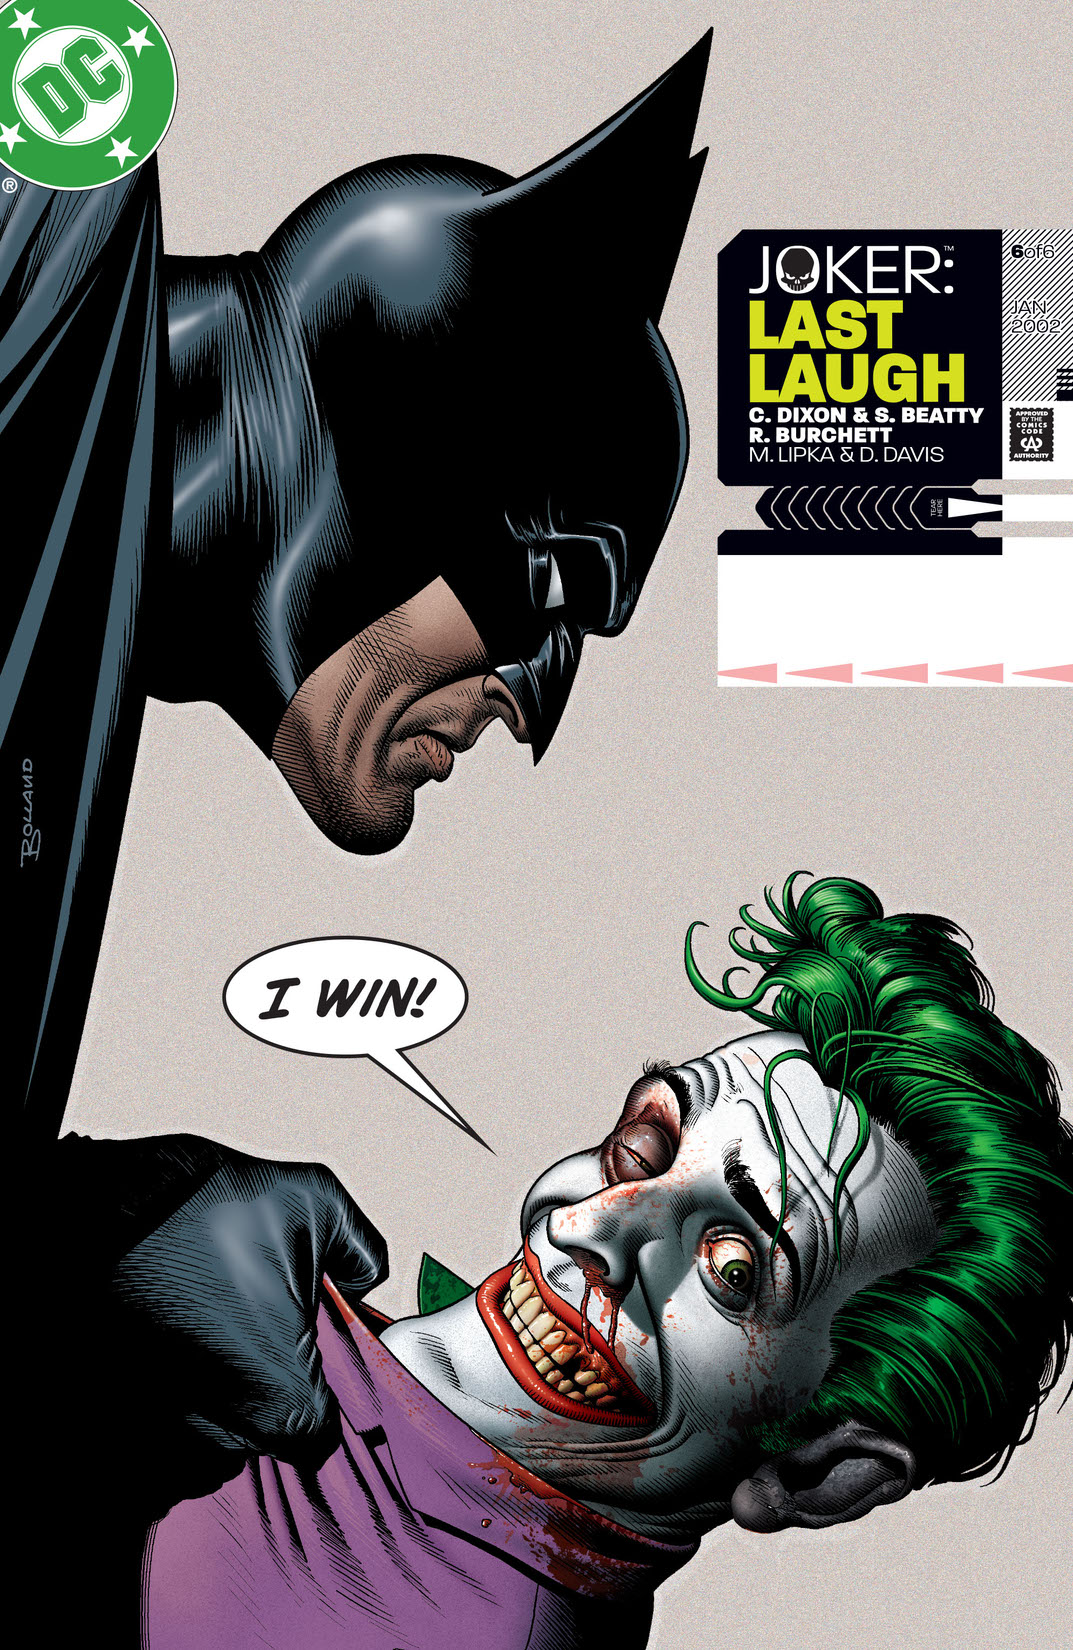 Joker: Last Laugh #6 preview images